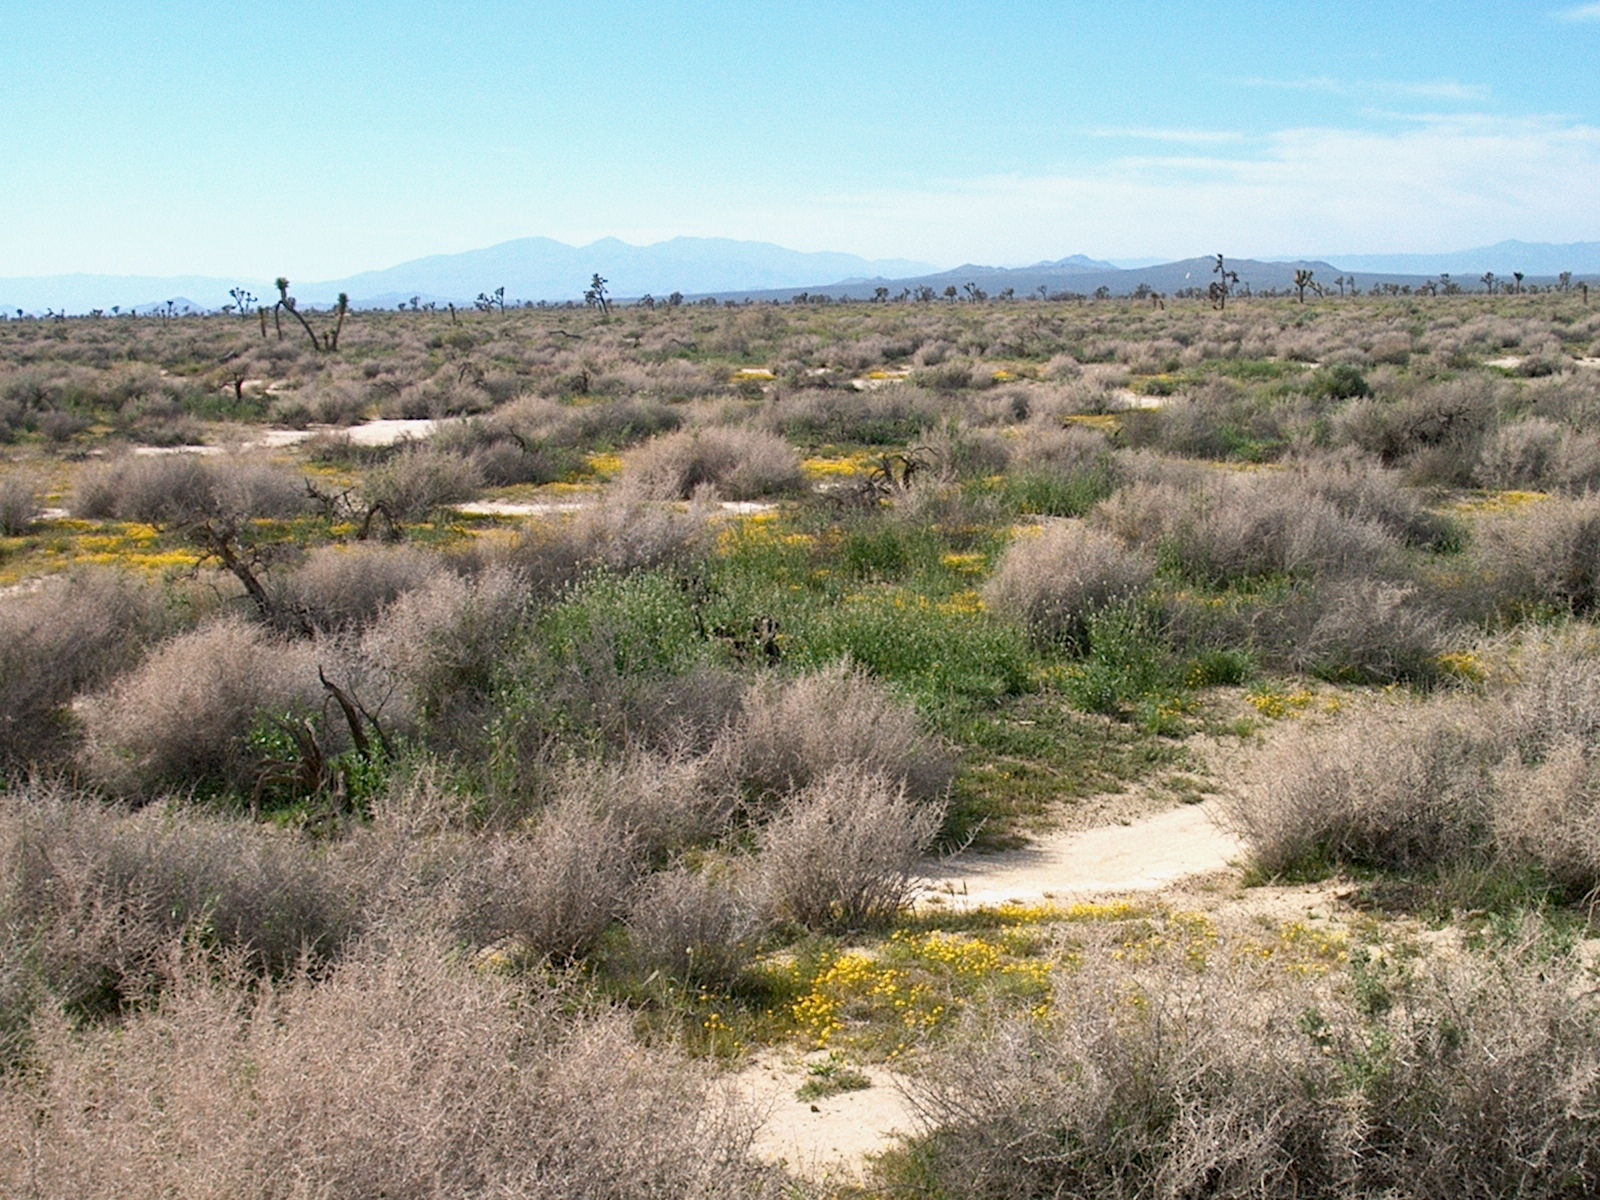 Desert vegetation in Mojave Valley